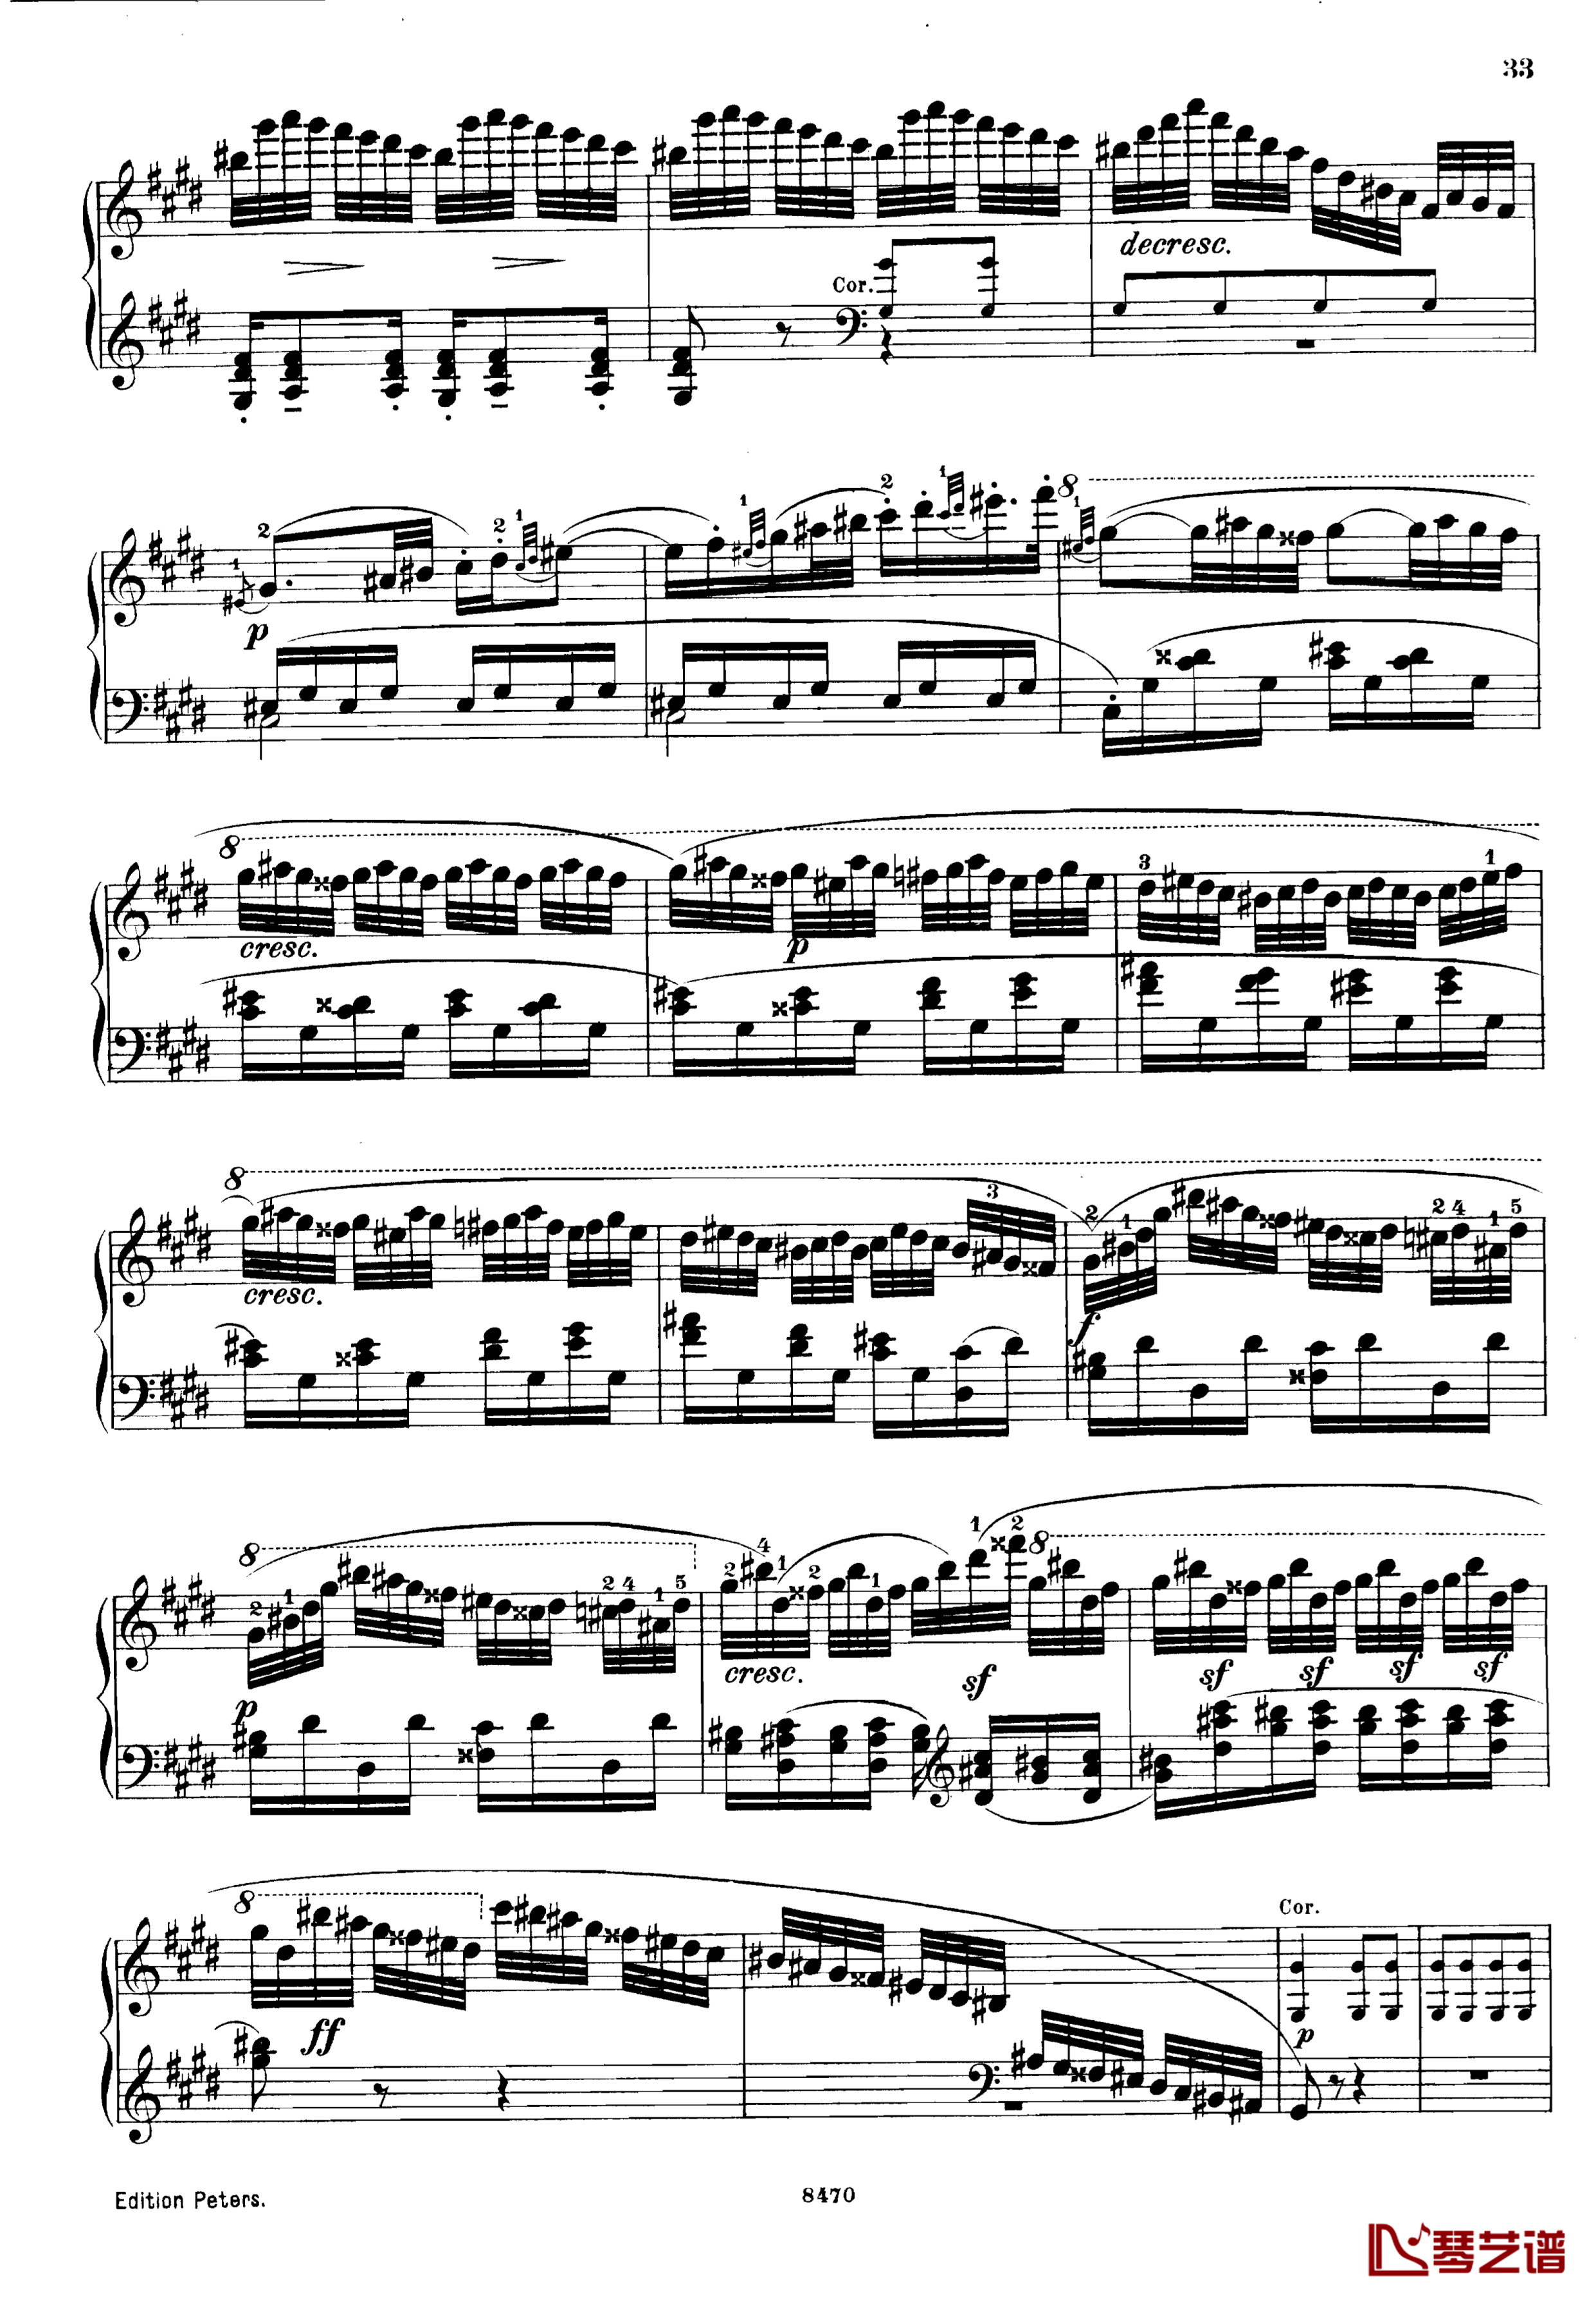 升c小调第三钢琴协奏曲Op.55钢琴谱-克里斯蒂安-里斯33